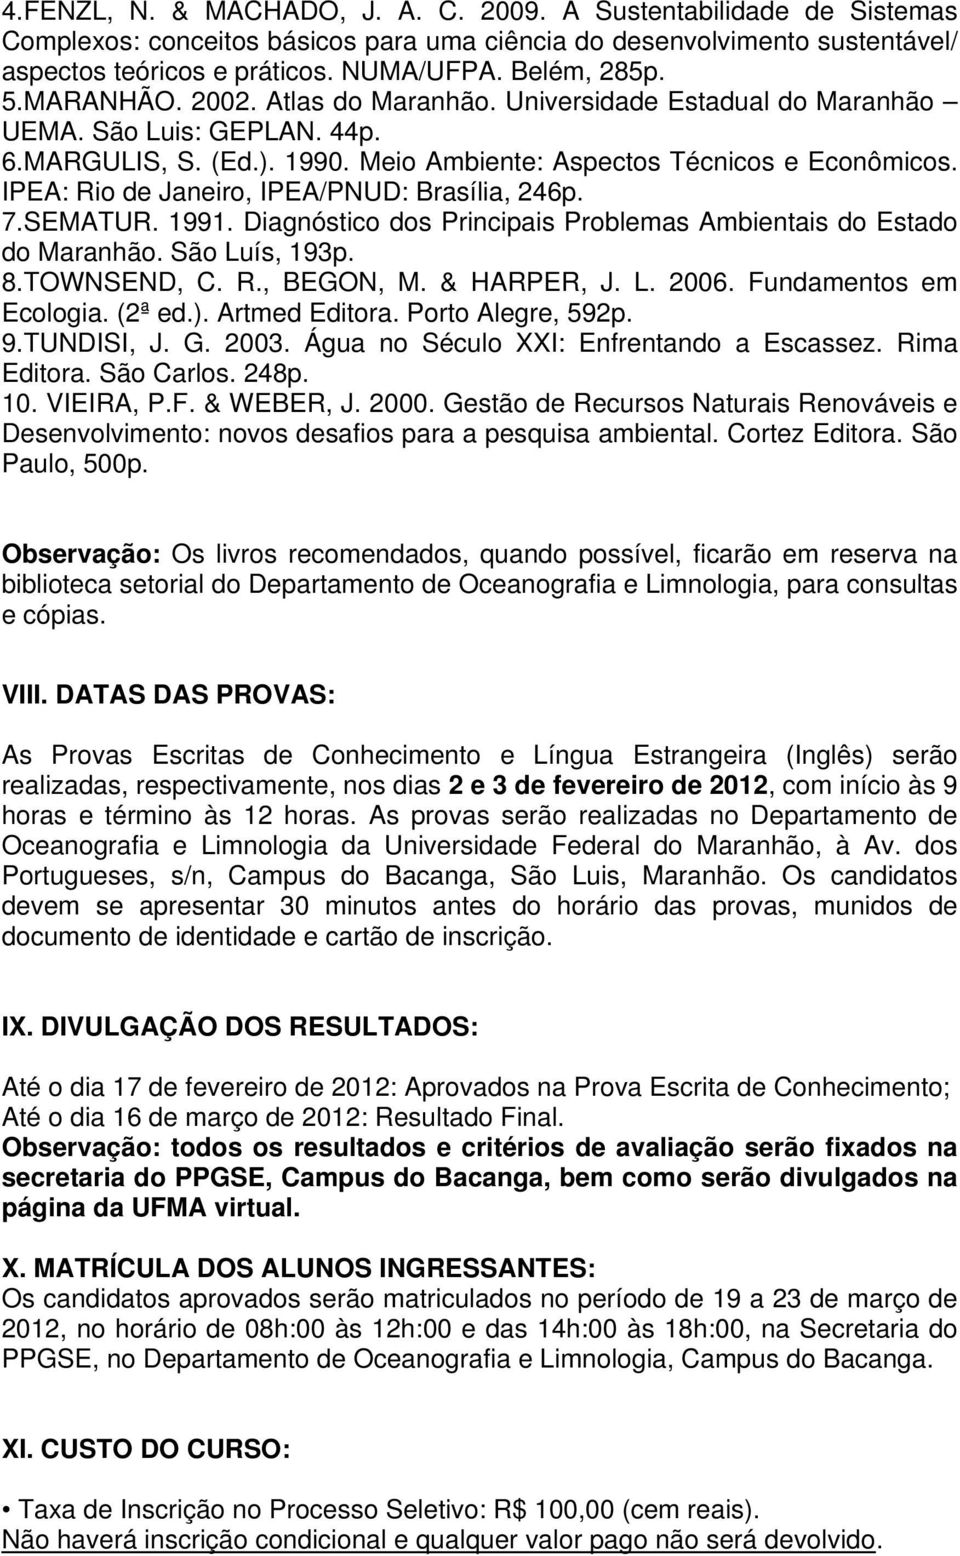 IPEA: Rio de Janeiro, IPEA/PNUD: Brasília, 246p. 7.SEMATUR. 1991. Diagnóstico dos Principais Problemas Ambientais do Estado do Maranhão. São Luís, 193p. 8.TOWNSEND, C. R., BEGON, M. & HARPER, J. L. 2006.